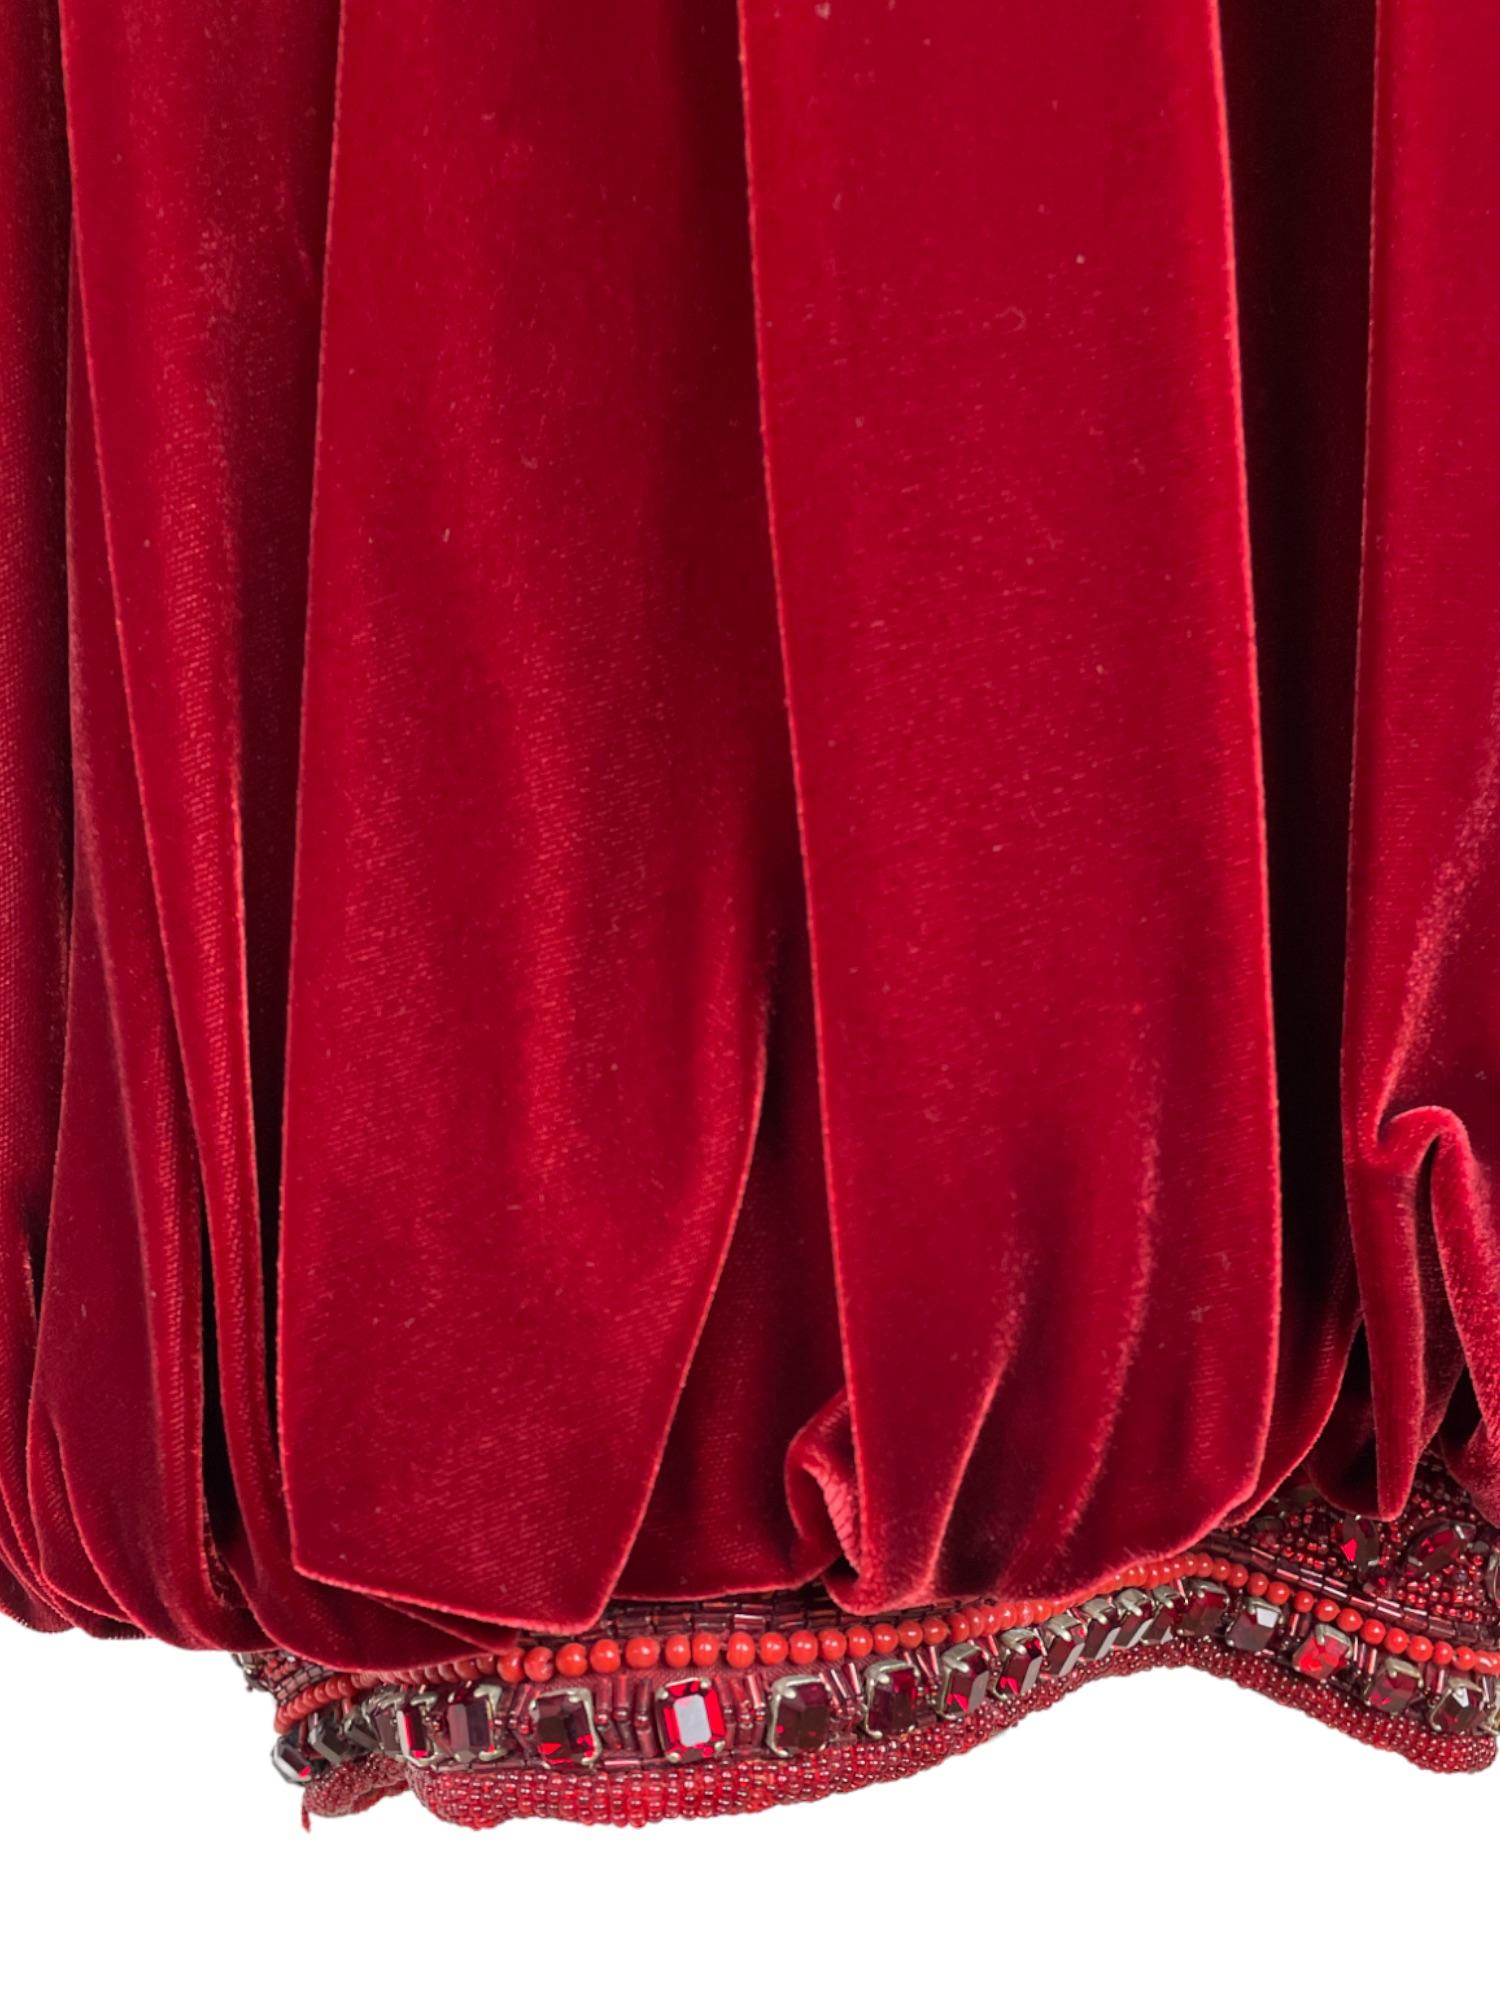 Seltenes Genny Rotes Samtkleid mit Edelsteinen 
(Einige Anzeichen von Alterung an den Schultern - siehe Bilder)
-
KEINE RÜCKGABE 